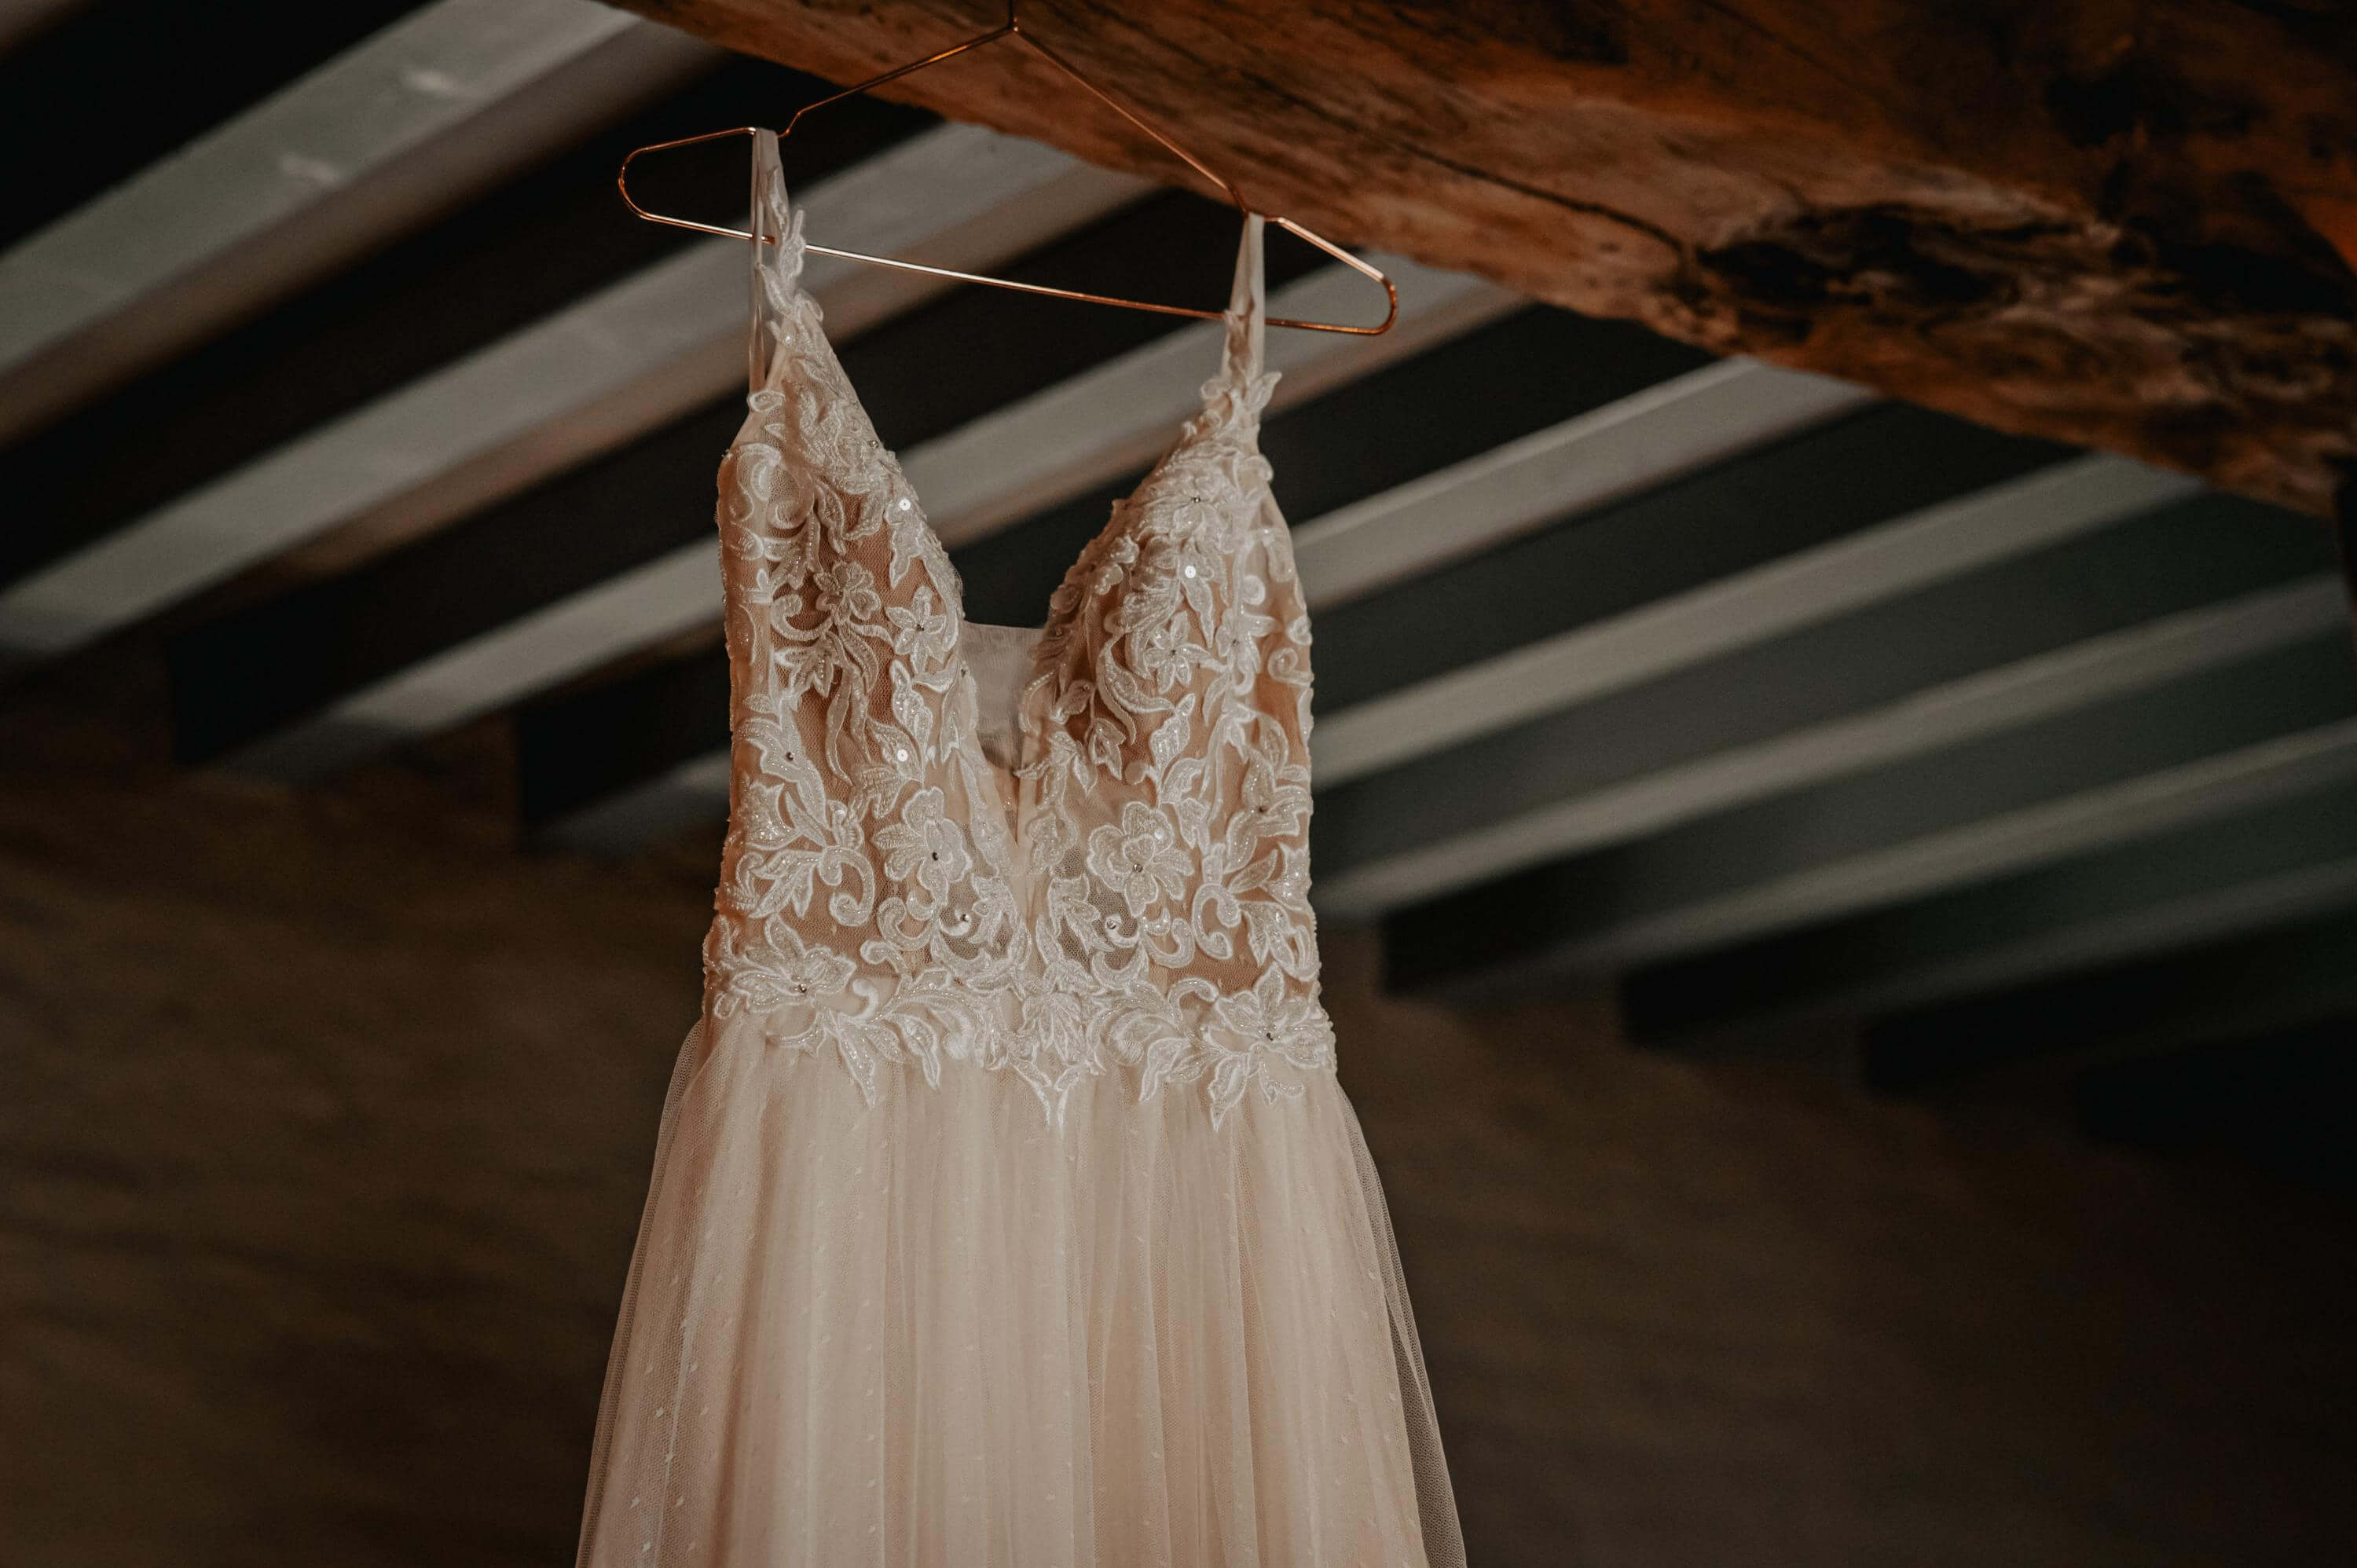 Ein leichtes leicht glitzerndes Hochzeitskleid mit grober Blumenspitze und schmalen Trägern hängt auf einem kupferfarbenen Bügel am Deckenbalken eines Hotelzimmers.